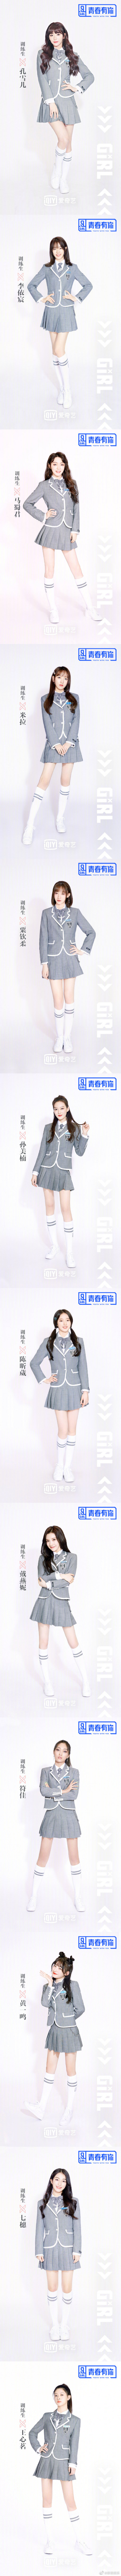 초스압) 중국 짭프듀 청춘유니2 109명 프로필 사진